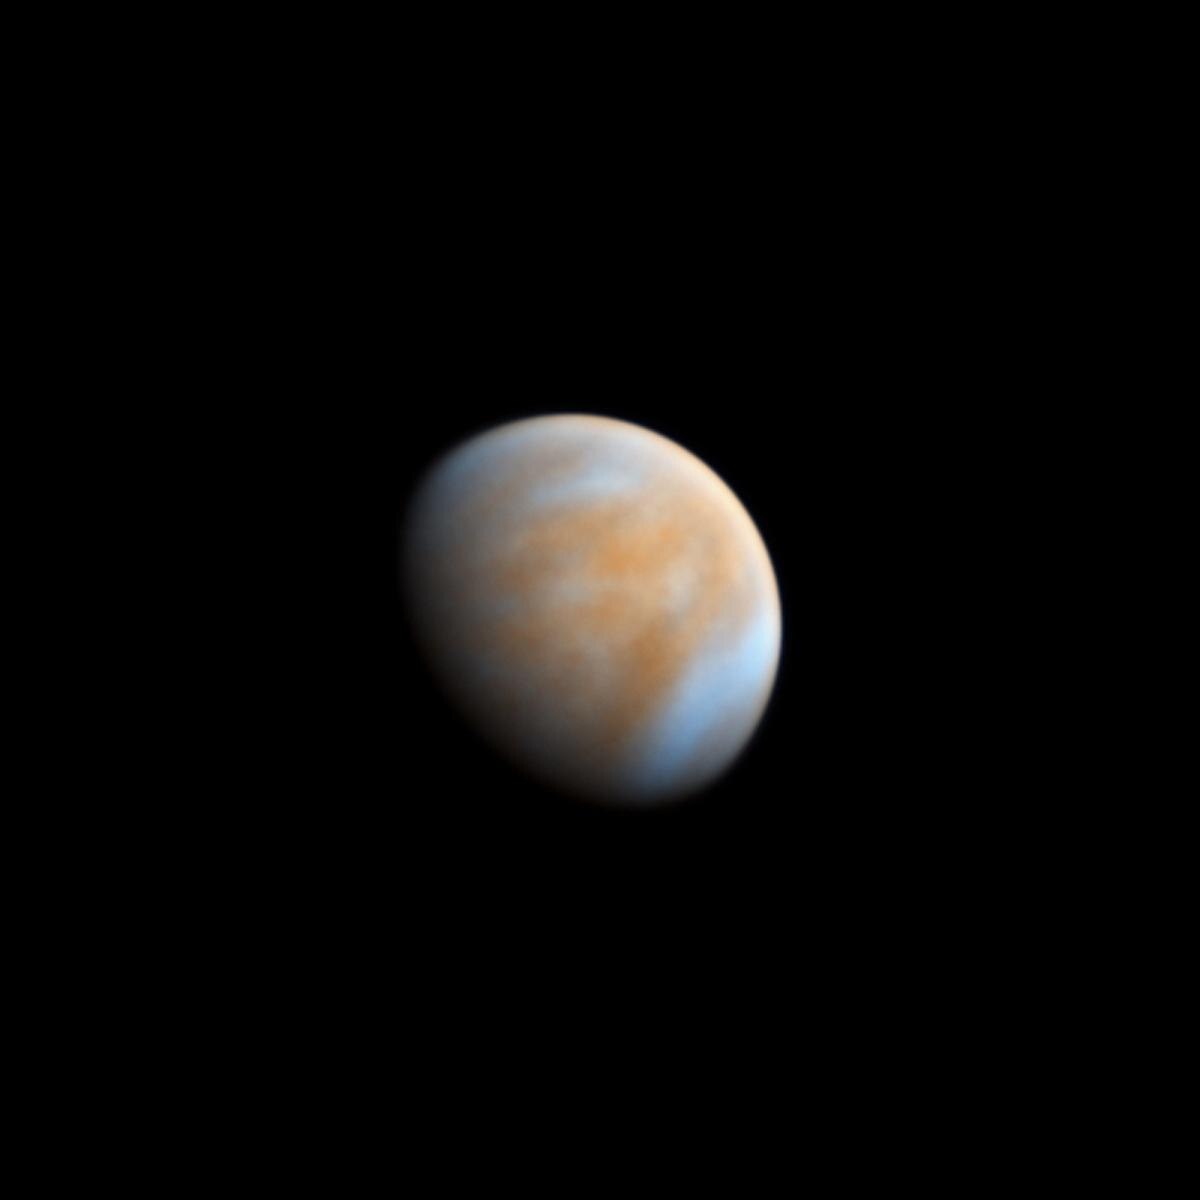 Obraz Wenus w kolorach podczerwonych na czarnym tle przestrzeni kosmicznej.